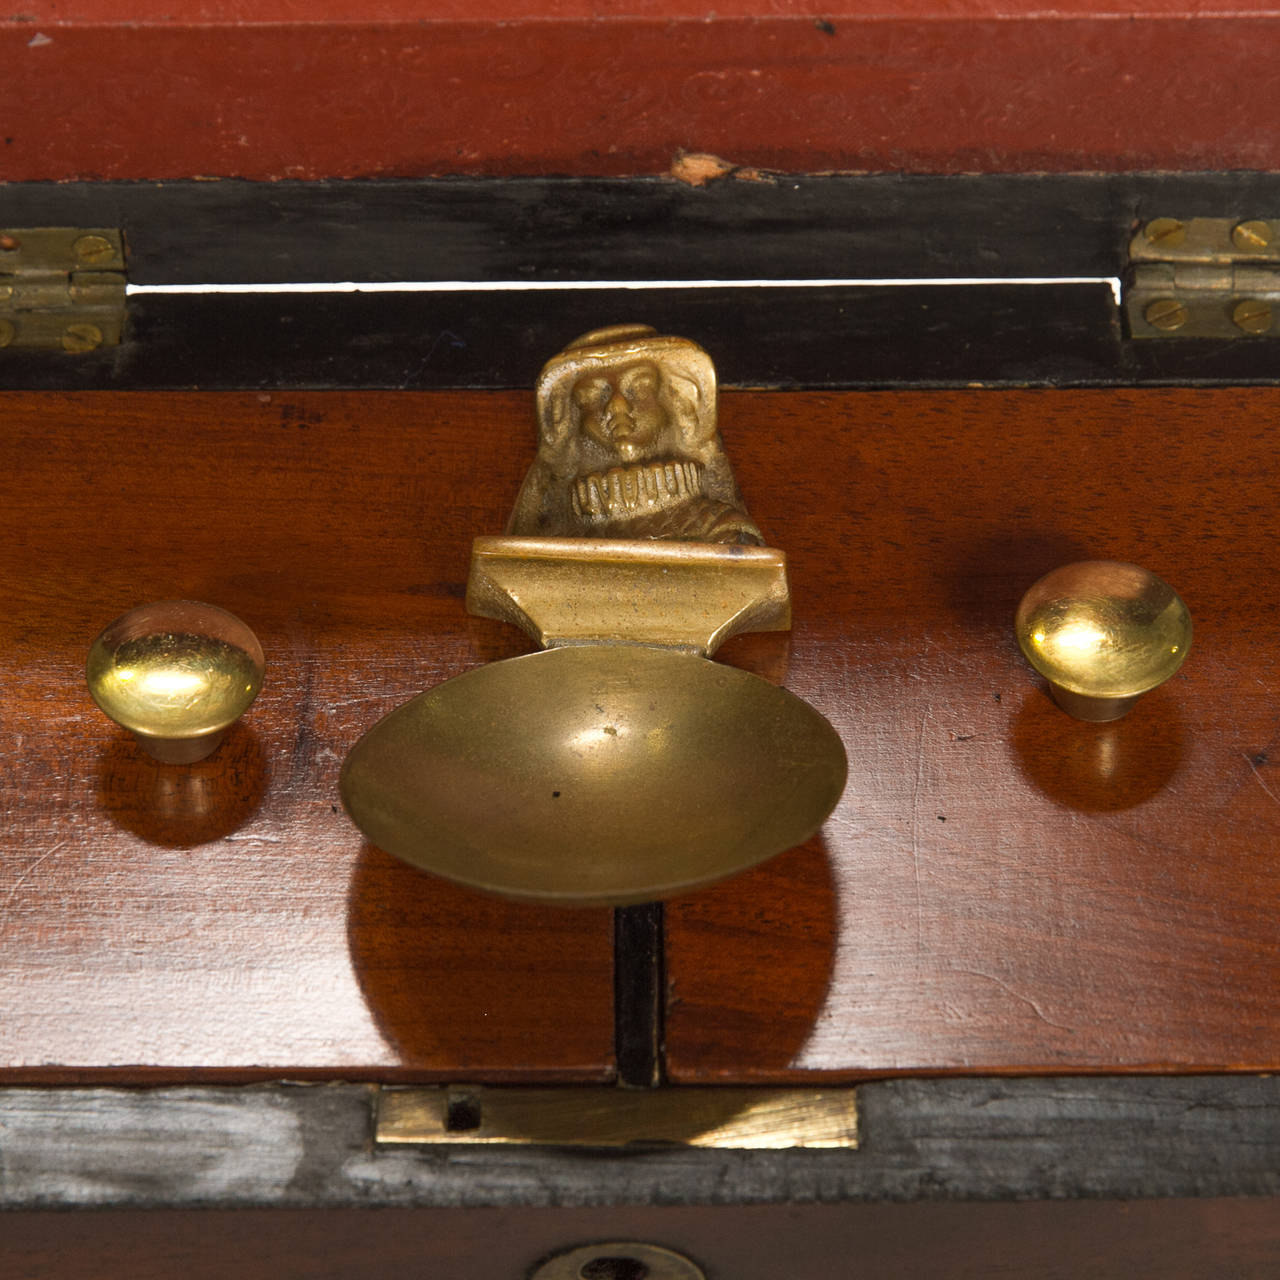 19th Century Regency Style Mahogany Tea Caddy with Spoon 1